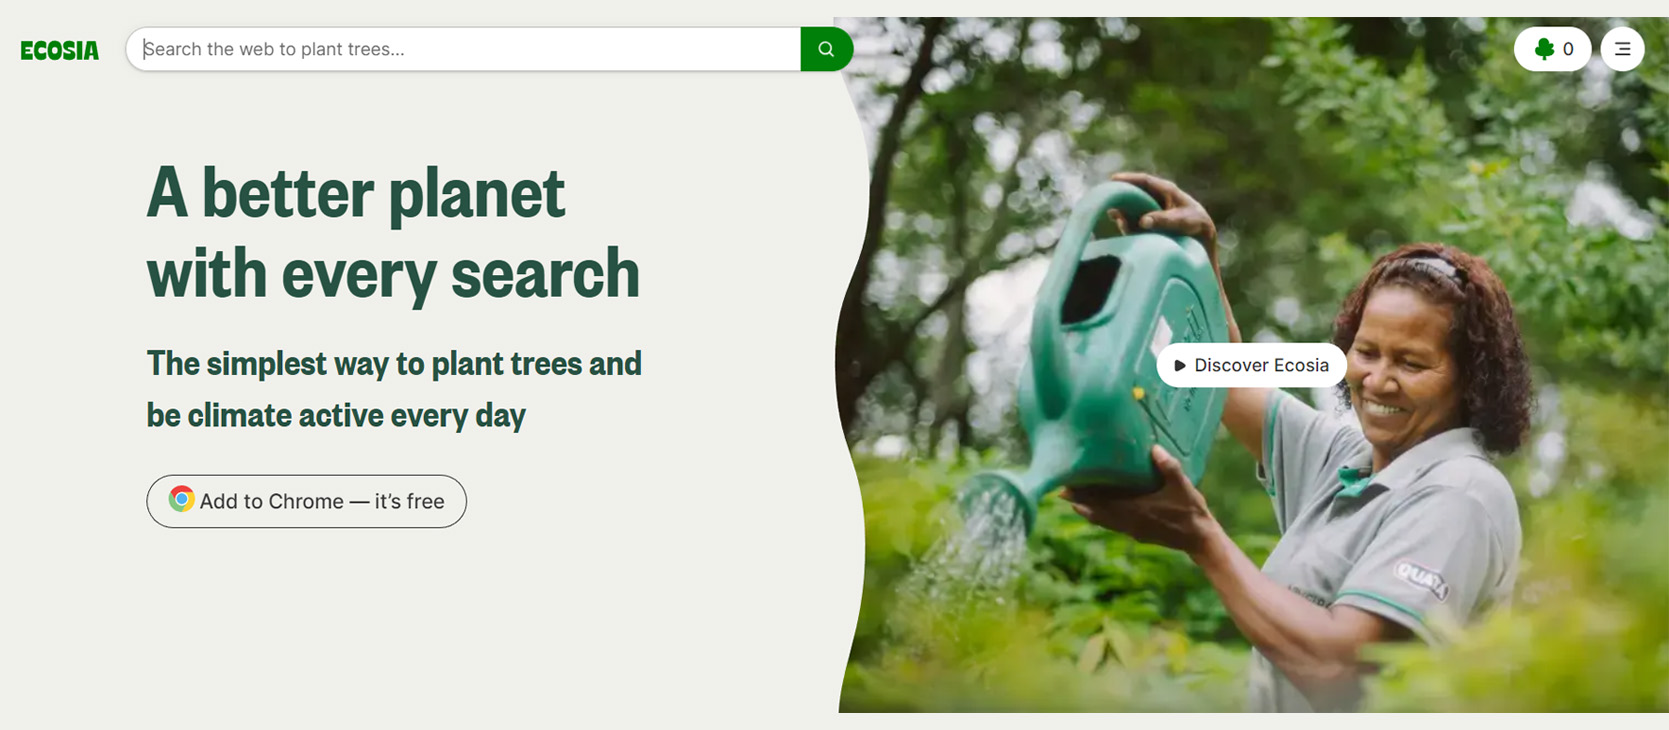 Ecosia private search engine